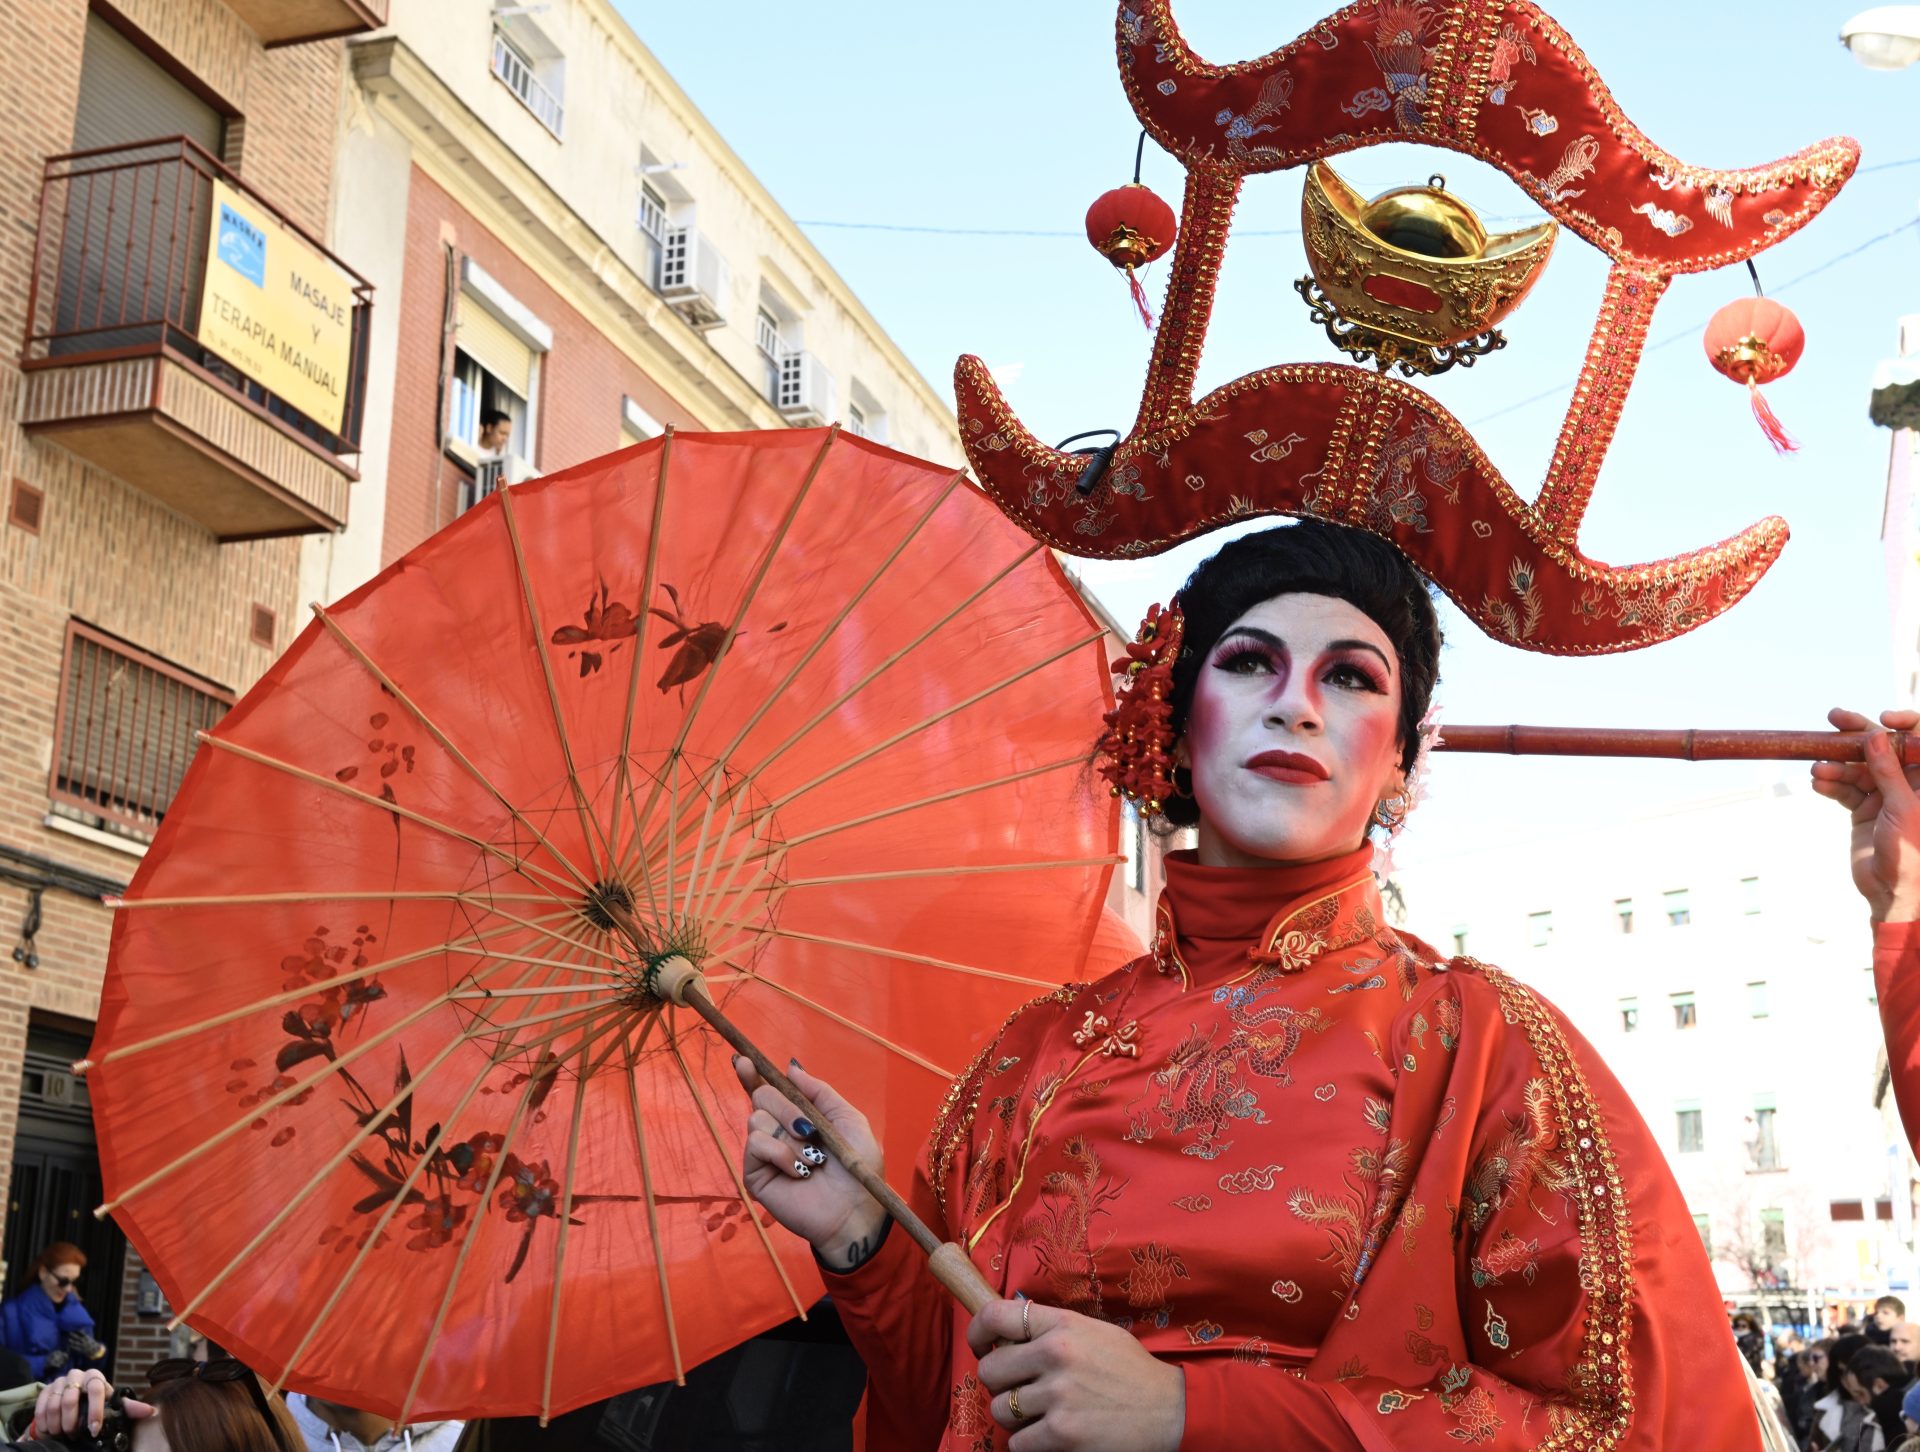 Gran Desfile multicultural del Año Nuevo chino, este domingo, en el madrileño barrio de Usera.